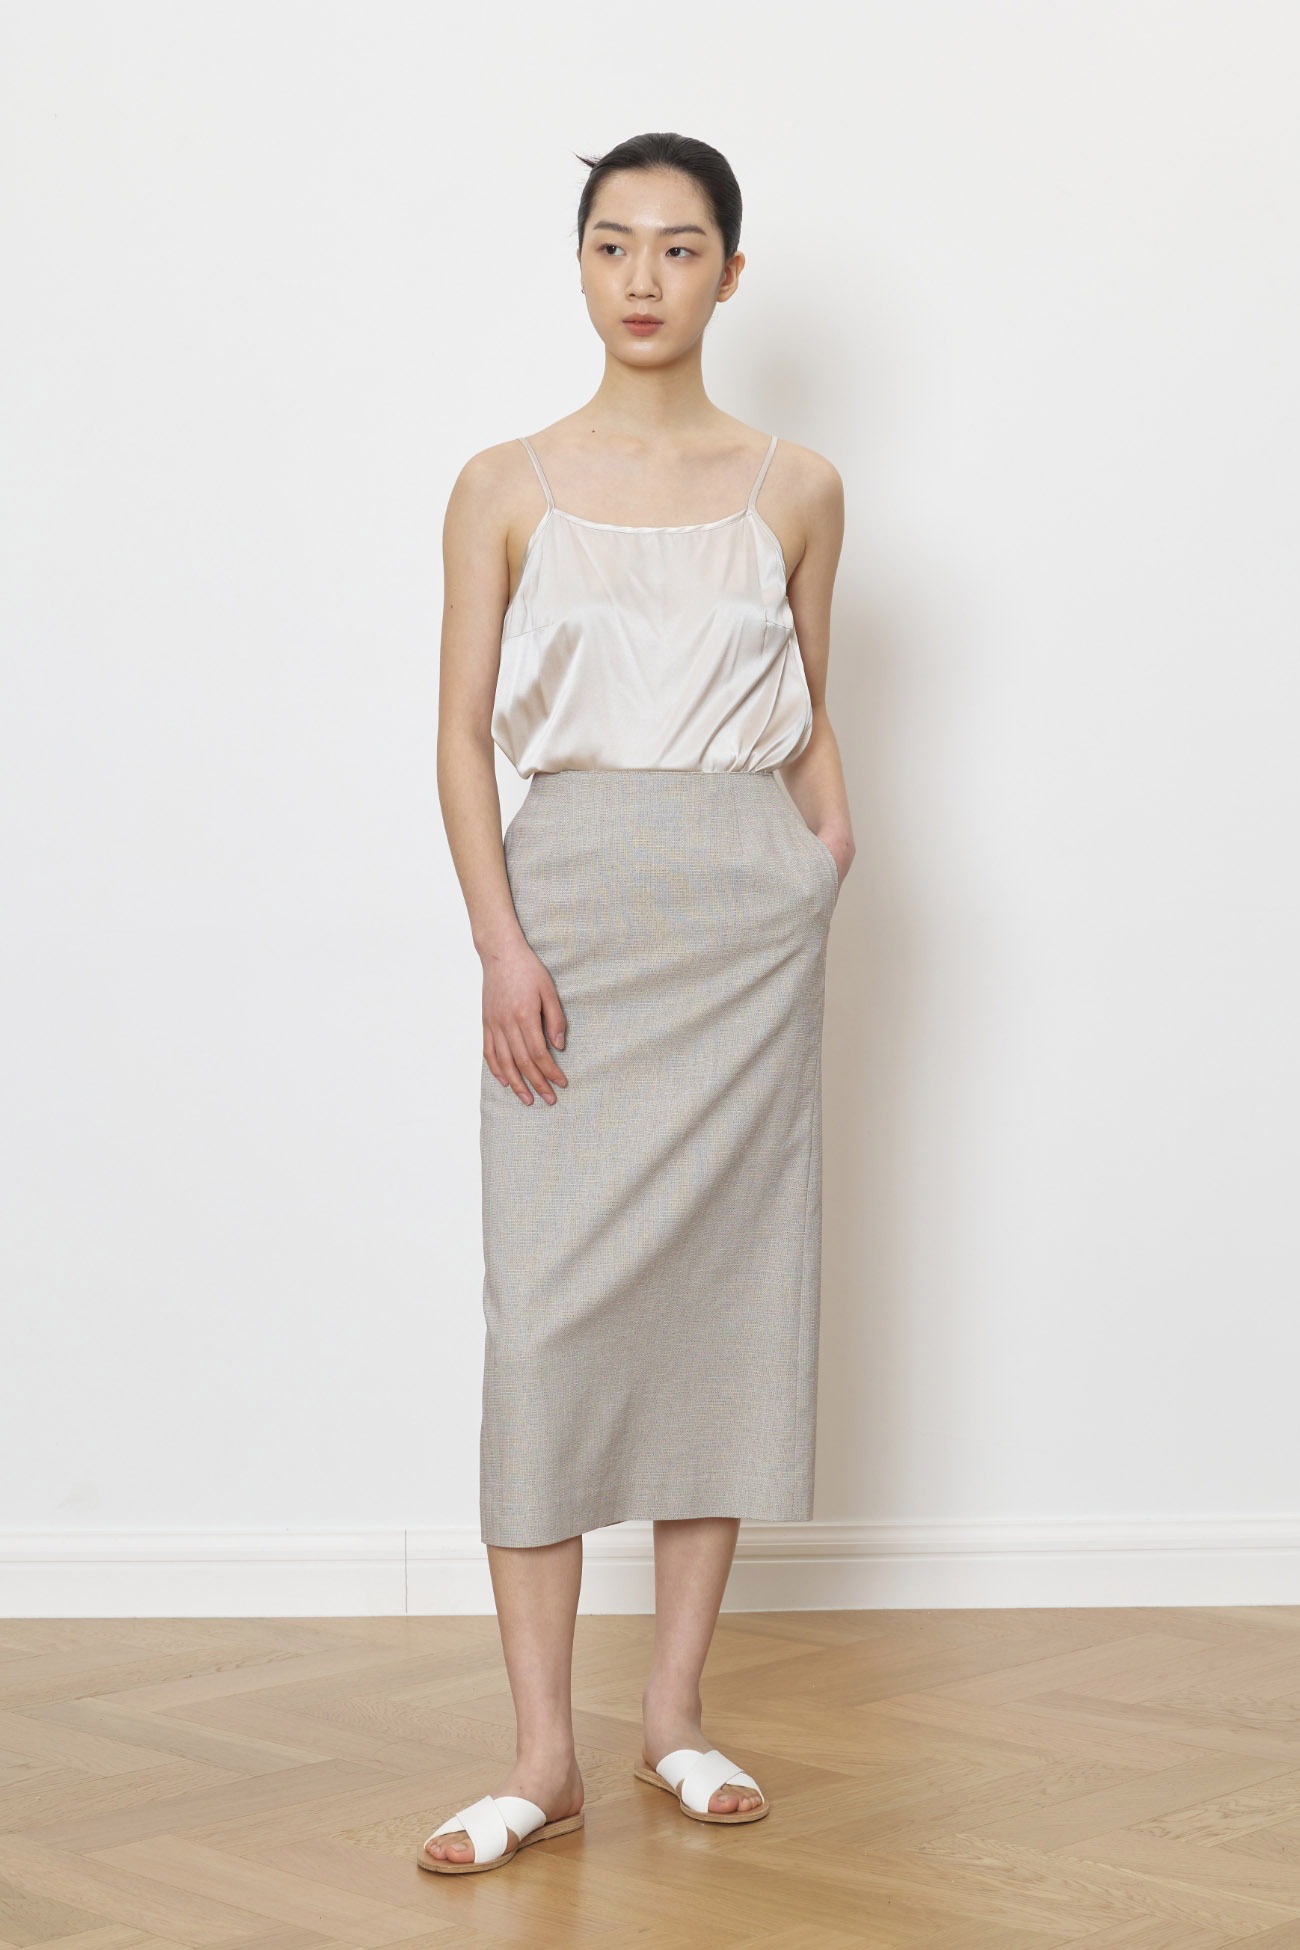 Soft linen feminine skirt